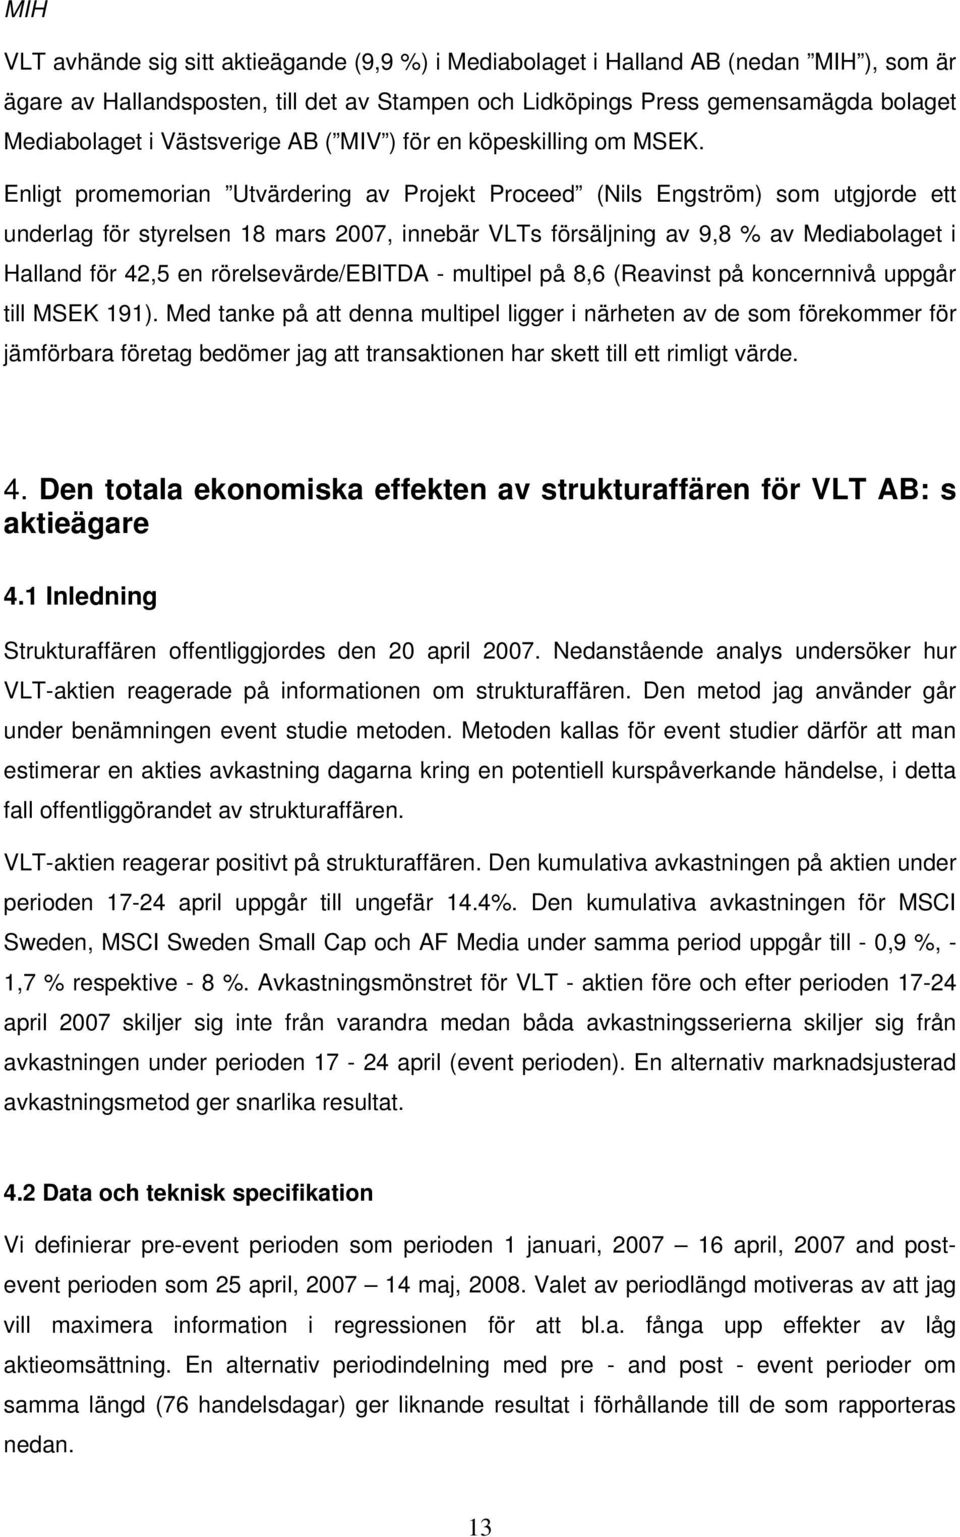 Enligt promemorian Utvärdering av Projekt Proceed (Nils Engström) som utgjorde ett underlag för styrelsen 18 mars 2007, innebär VLTs försäljning av 9,8 % av Mediabolaget i Halland för 42,5 en